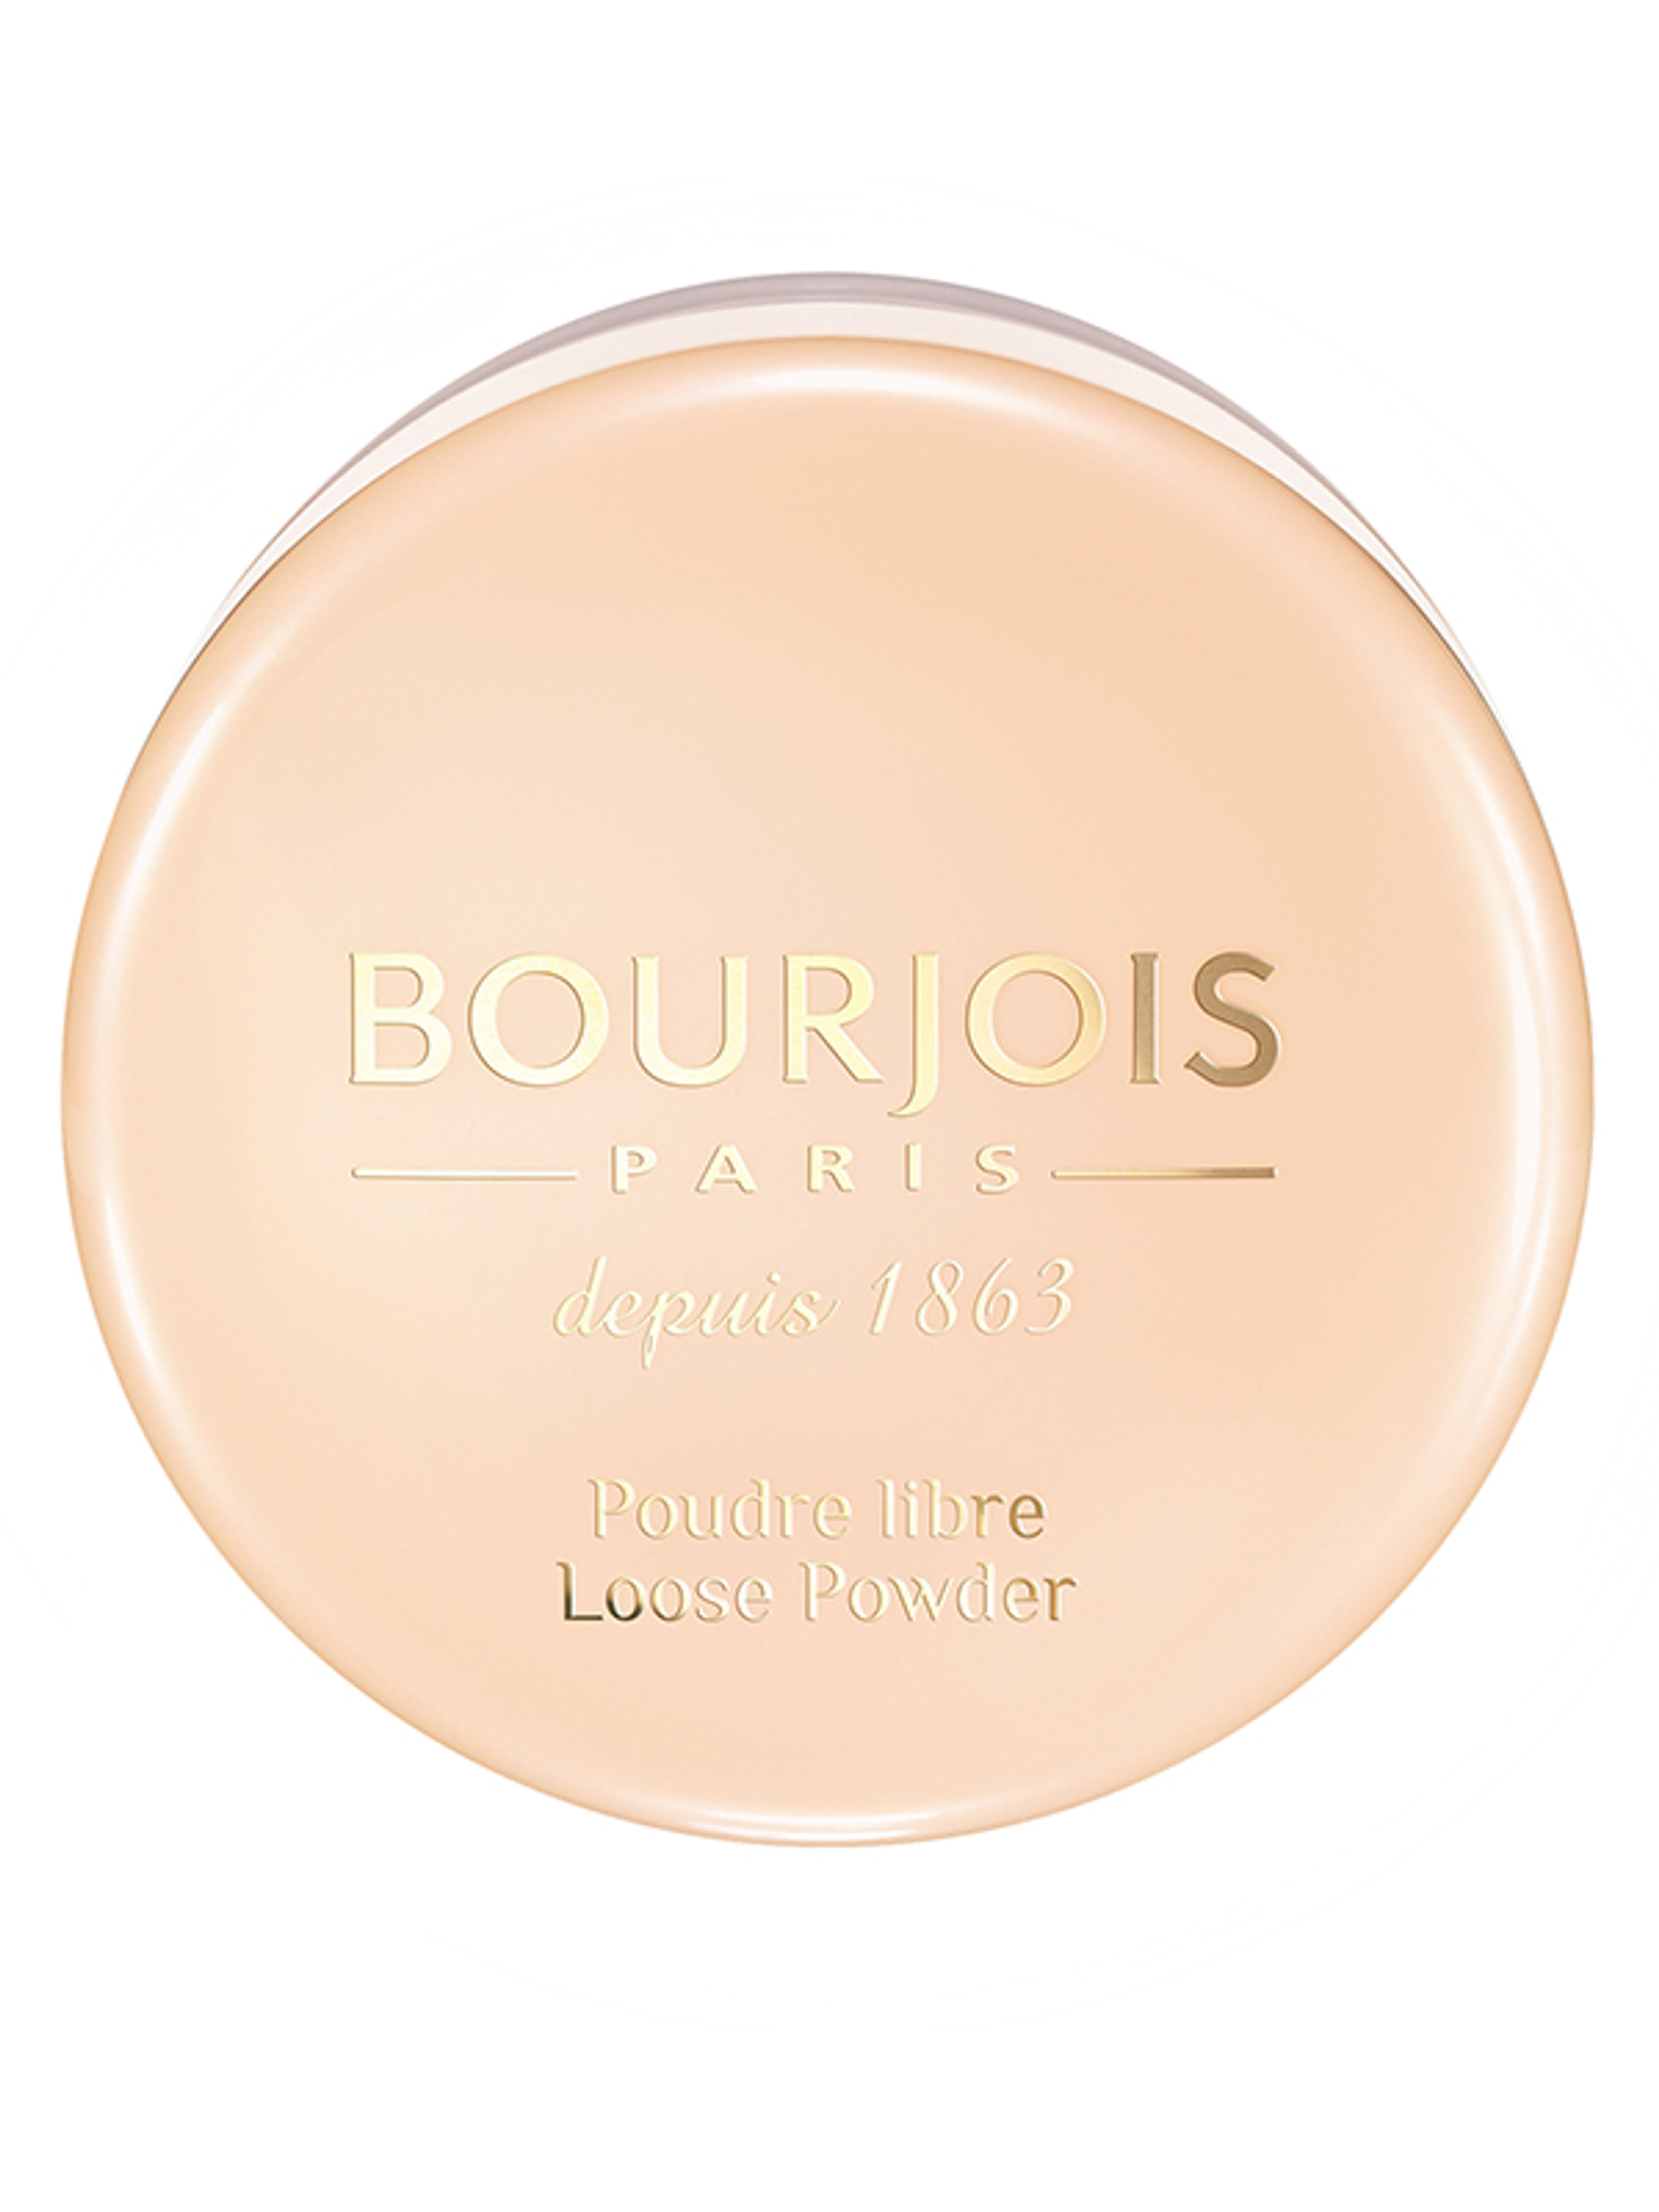 Bourjois Loose Powder porpúder /02 - 1 db-1